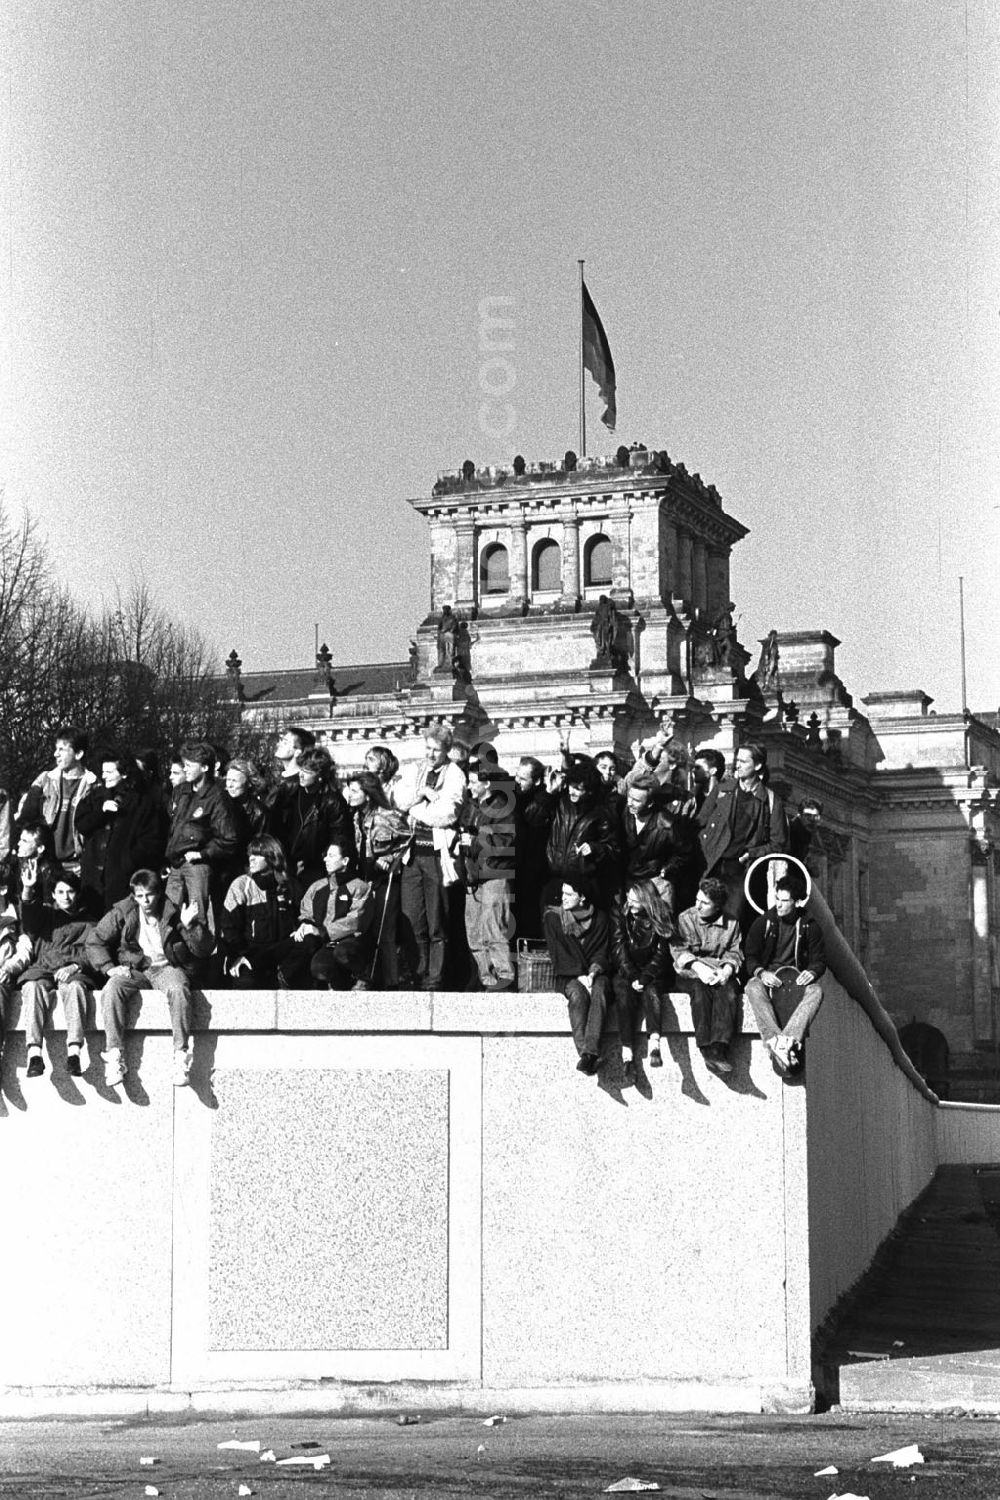 GDR image archive: Berlin - Soldaten der DDR stehen vor der Berliner-Mauer am Brandenburger Tor, auf der Mauer sitzen und stehen Menschen. Im Hintergrund der Reichstag.